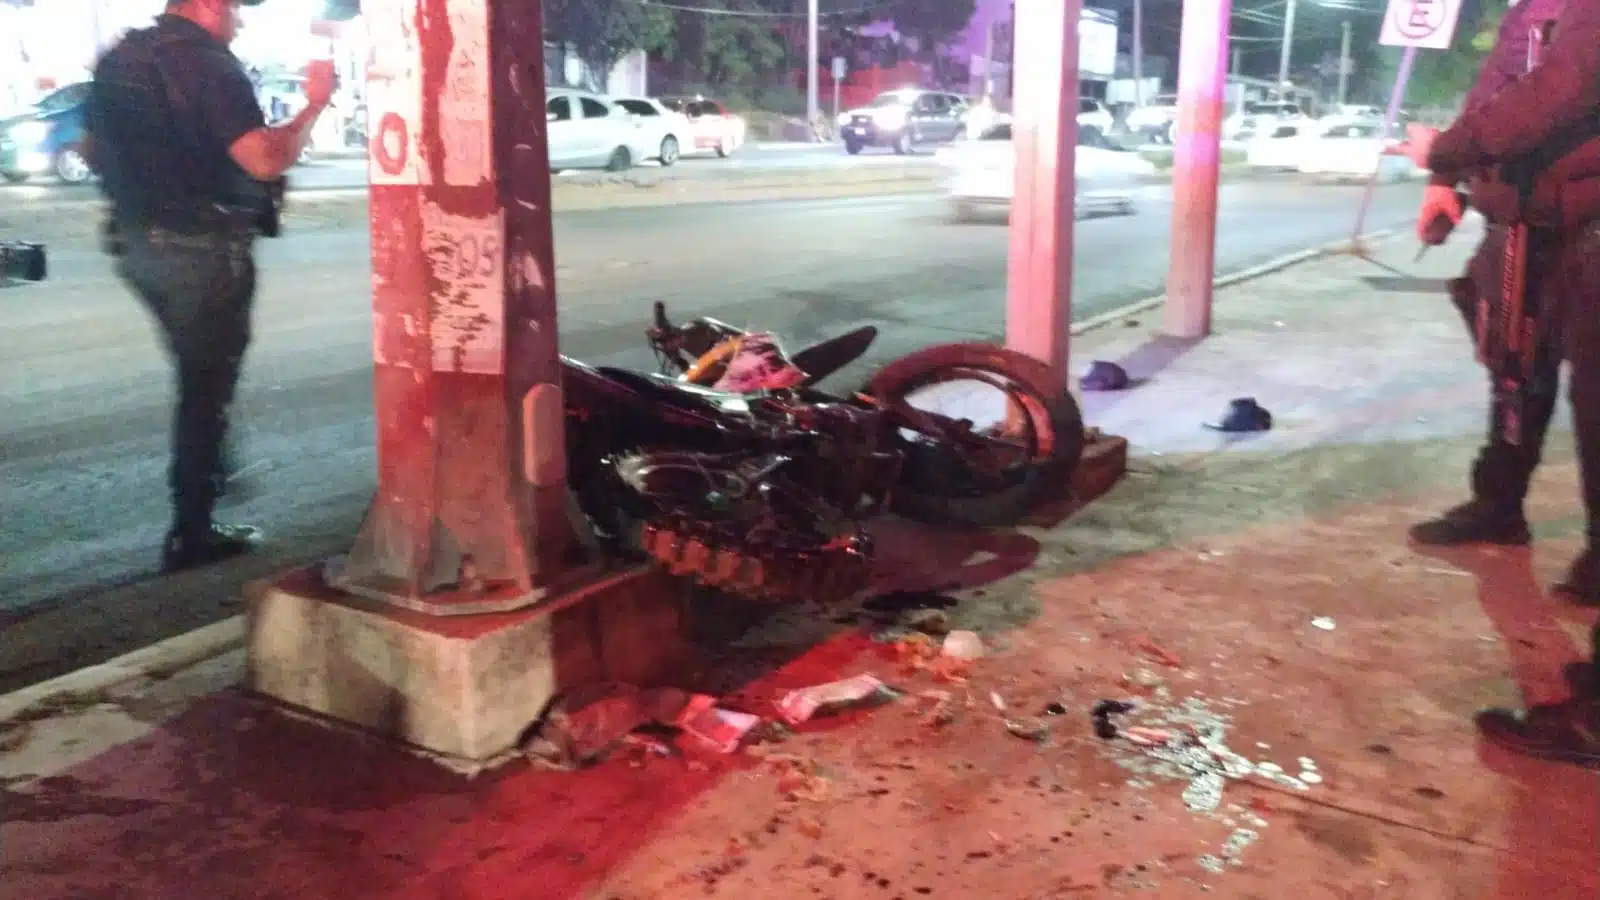 Los presuntos ladrones dejaron abandonada la motocicleta tras el choque.